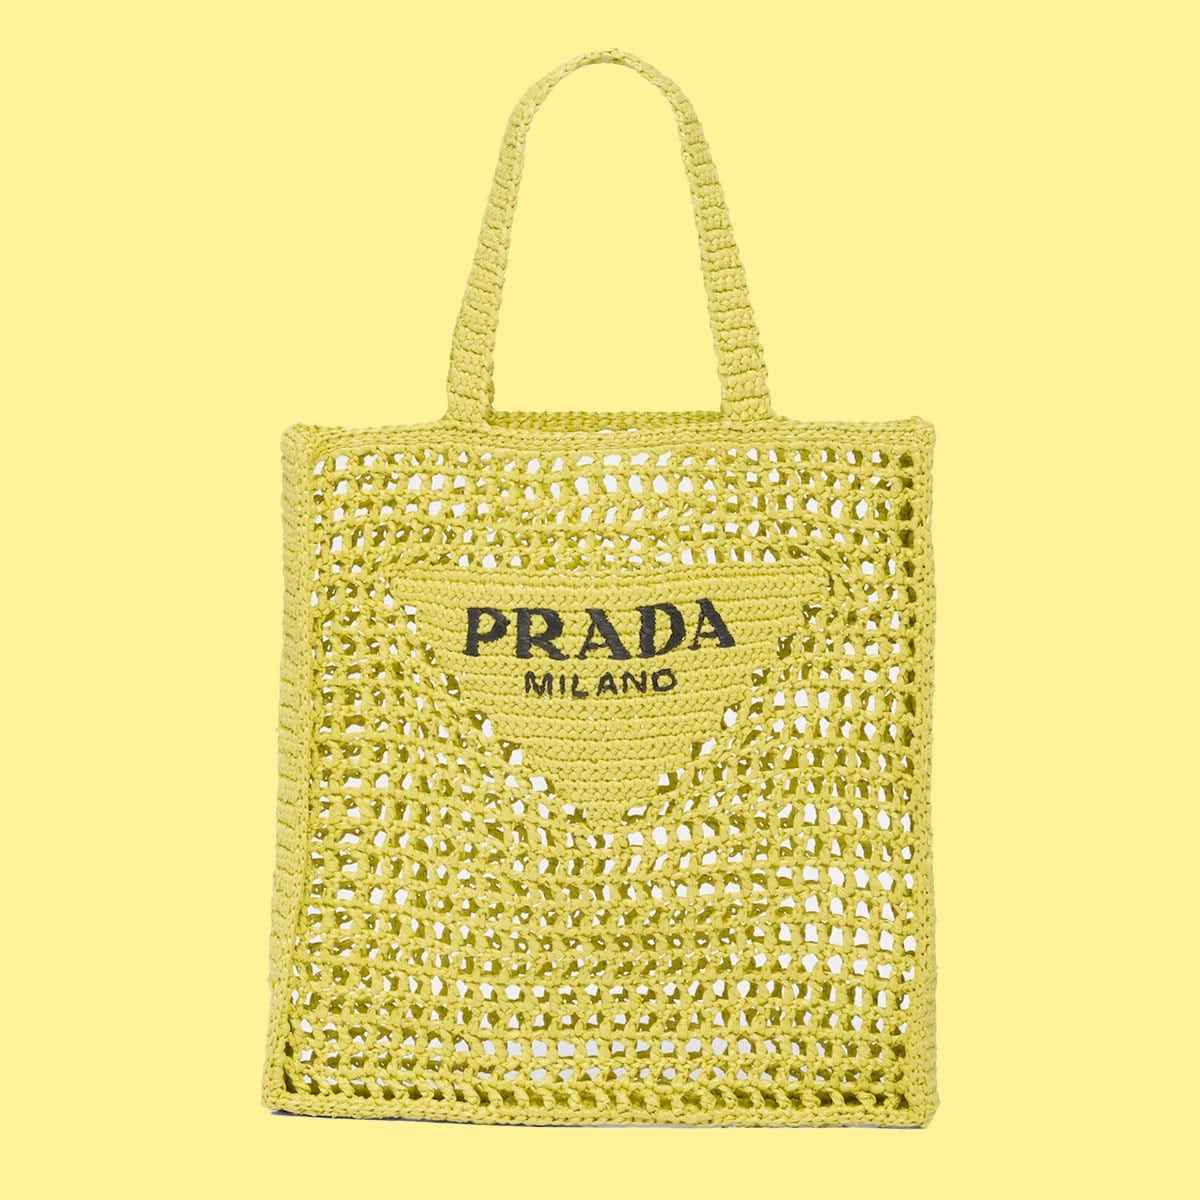 Get Summer Ready With Prada's Latest Raffia Bags - PurseBlog